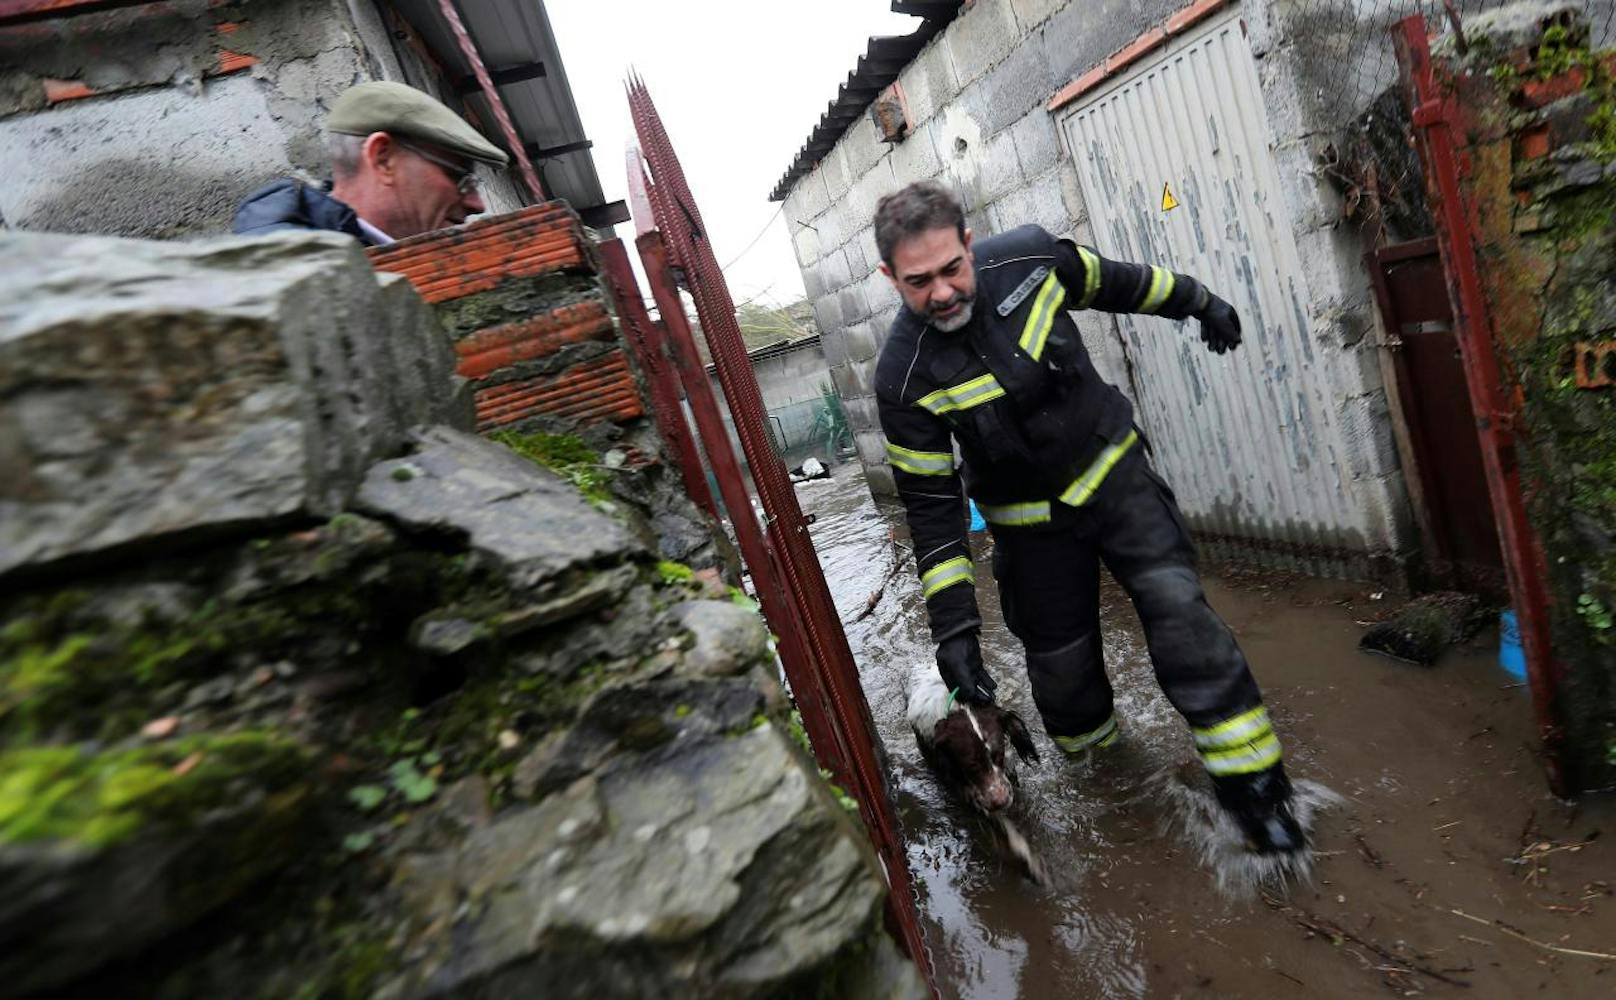 In Frankreich, Spanien und Portugal haben am Samstag erneut schwere Unwetter gewütet. In Spanien gab es nach Behördenangaben drei Tote, in Frankreich einen Vermissten.